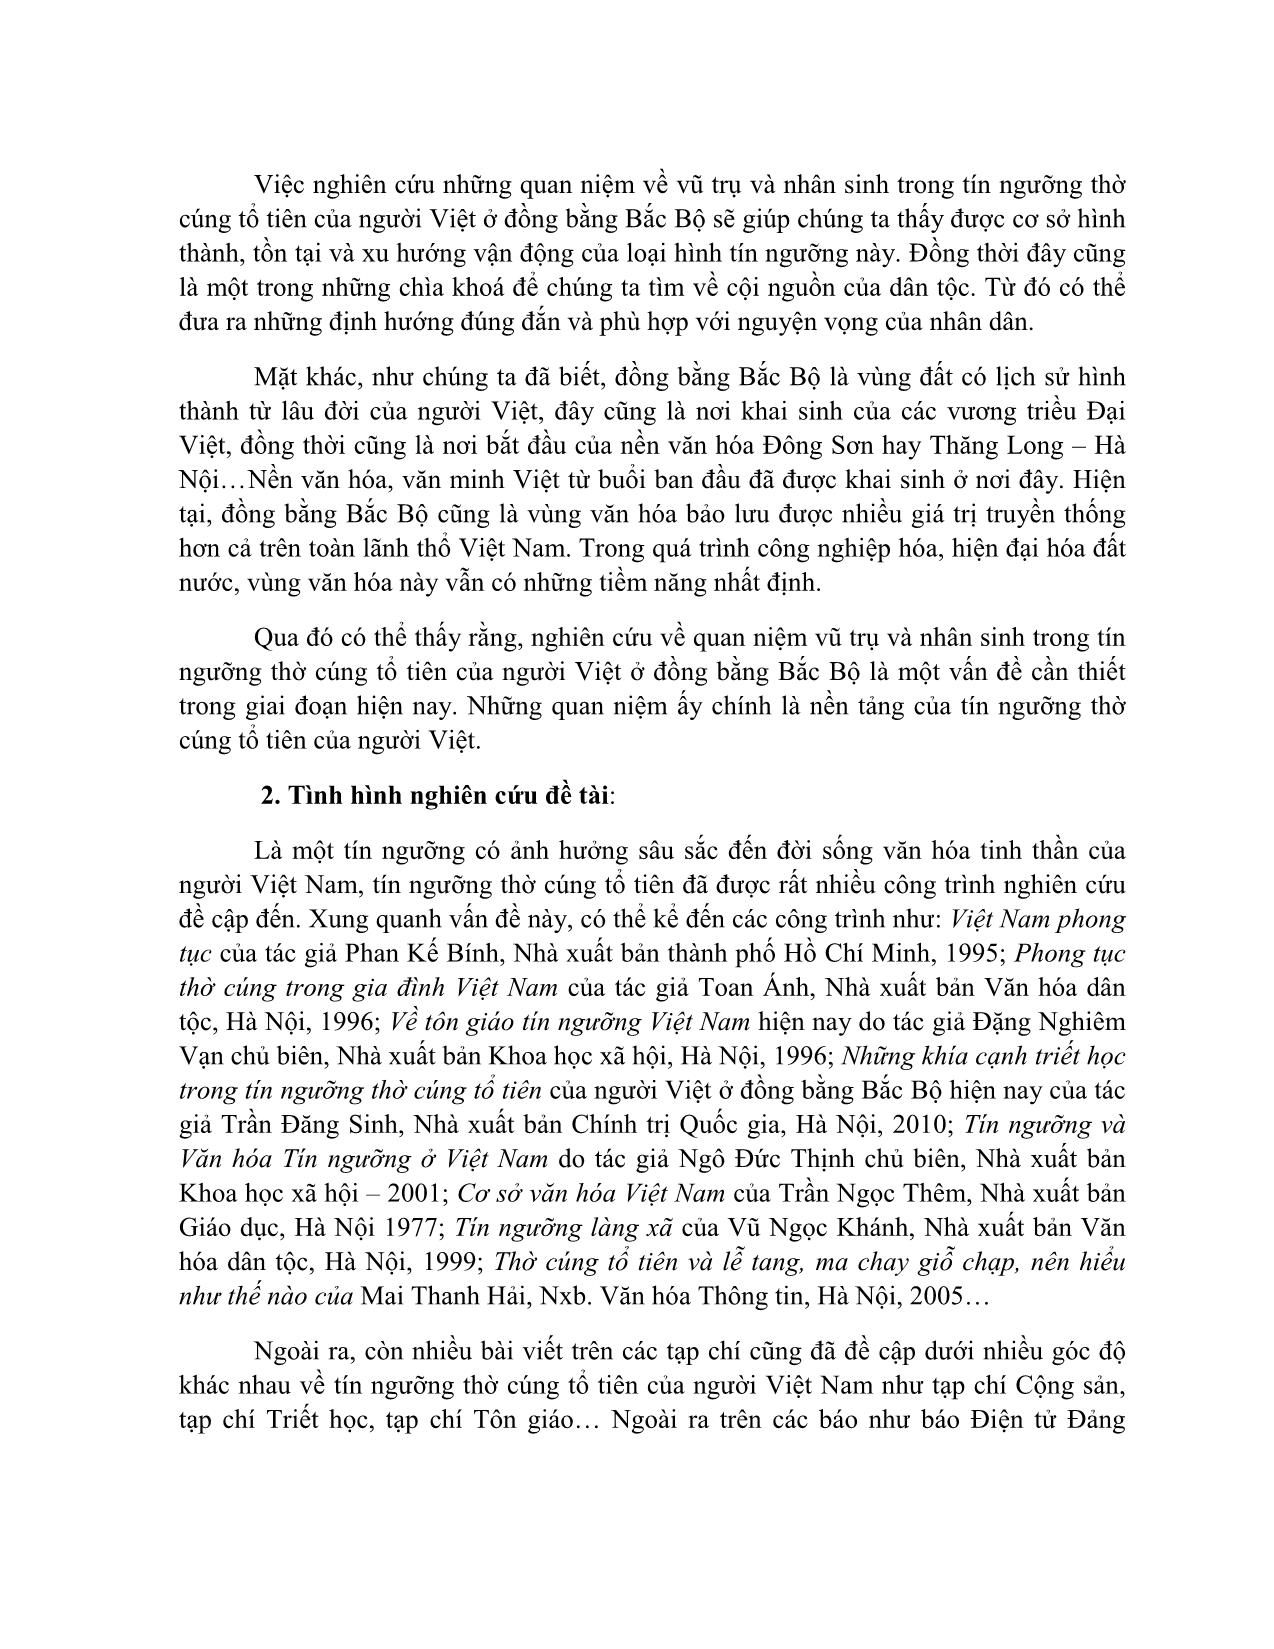 Quan niệm về vũ trụ và nhân sinh trong tín ngưỡng thờ cúng tổ tiên của người Việt ở đồng bằng Bắc Bộ trang 2